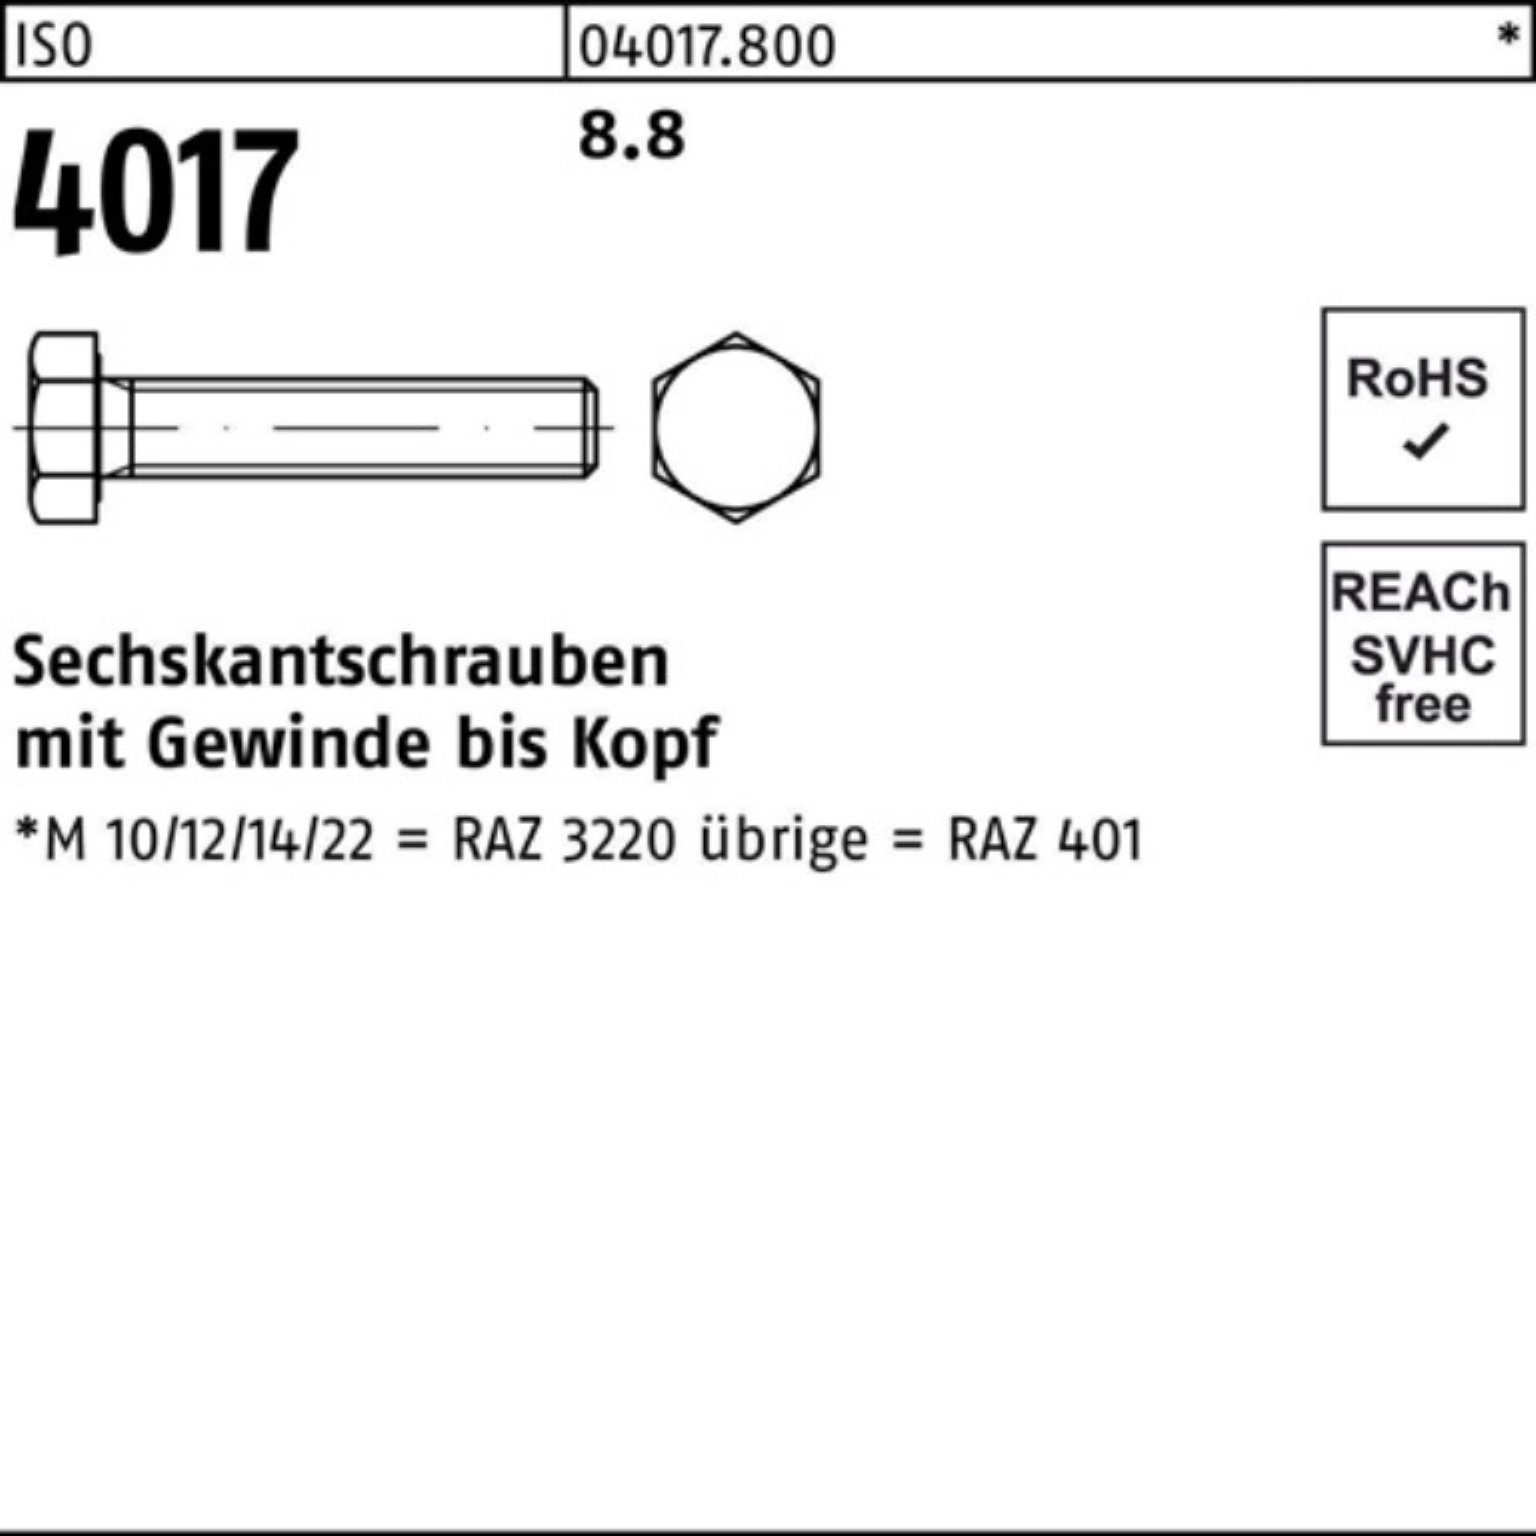 Bufab Sechskantschraube 100er Pack Sechskantschraube 65 4017 8.8 VG M14x ISO 401 ISO Stück 50